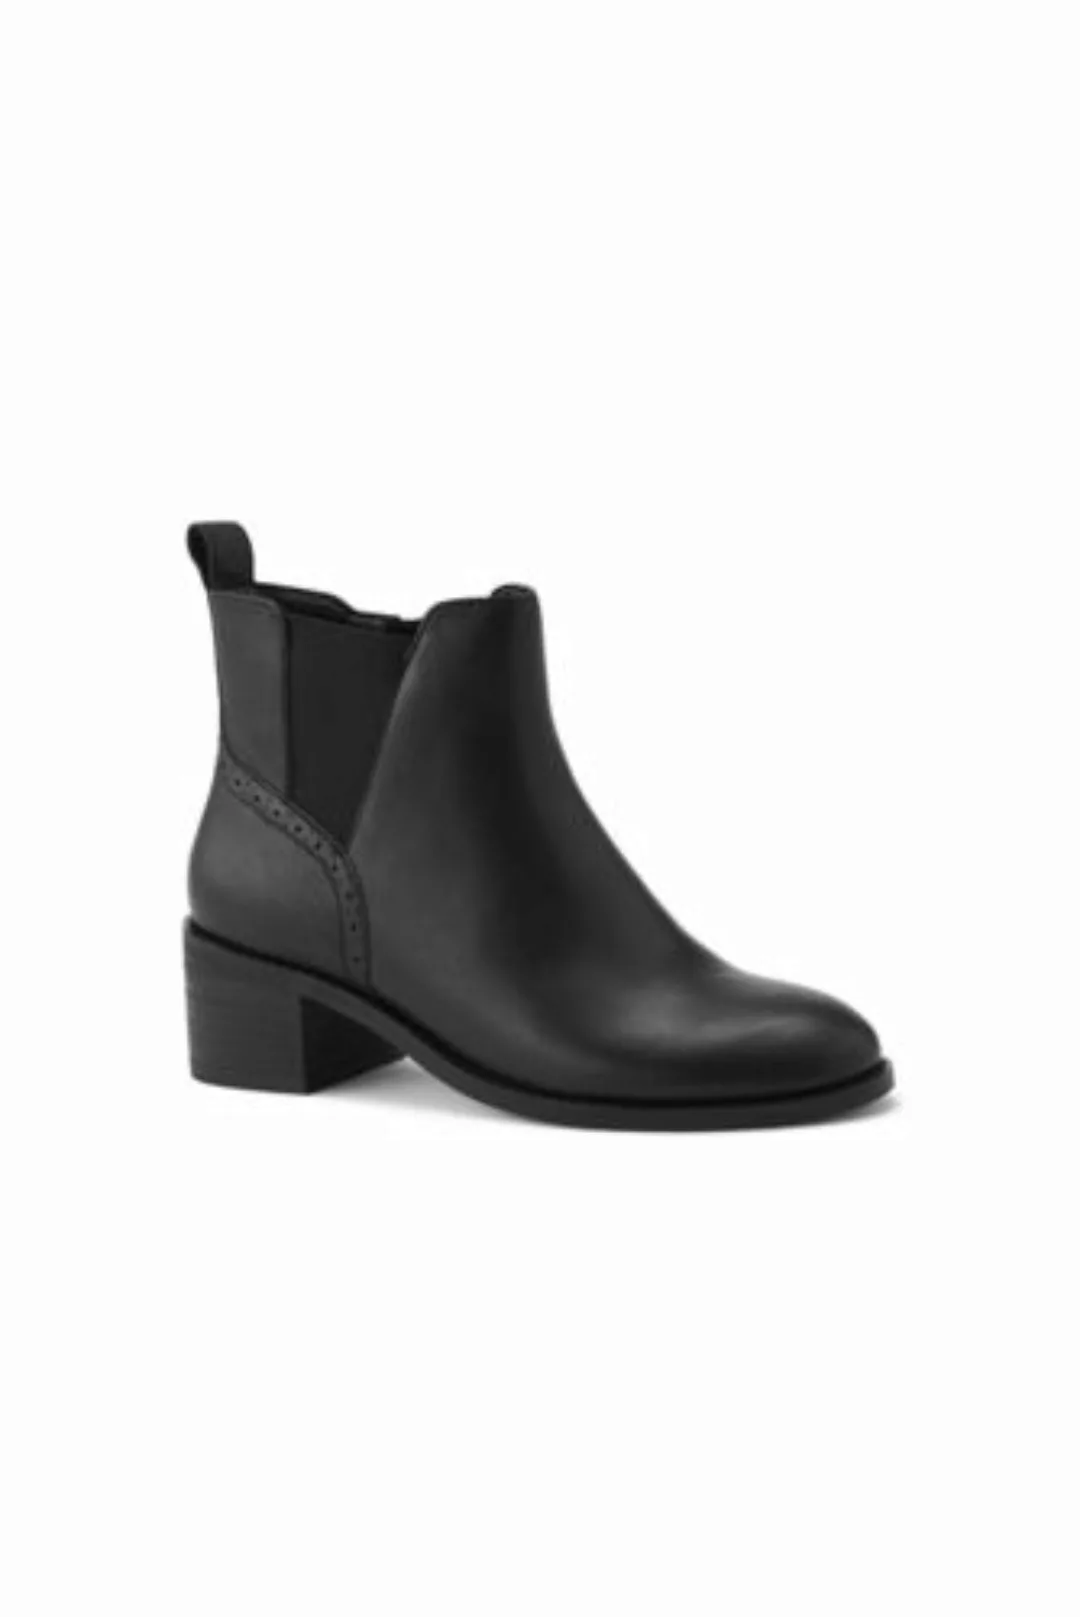 Chelsea-Boots mit Blockabsatz, Damen, Größe: 38 Normal, Schwarz, Leder, by günstig online kaufen